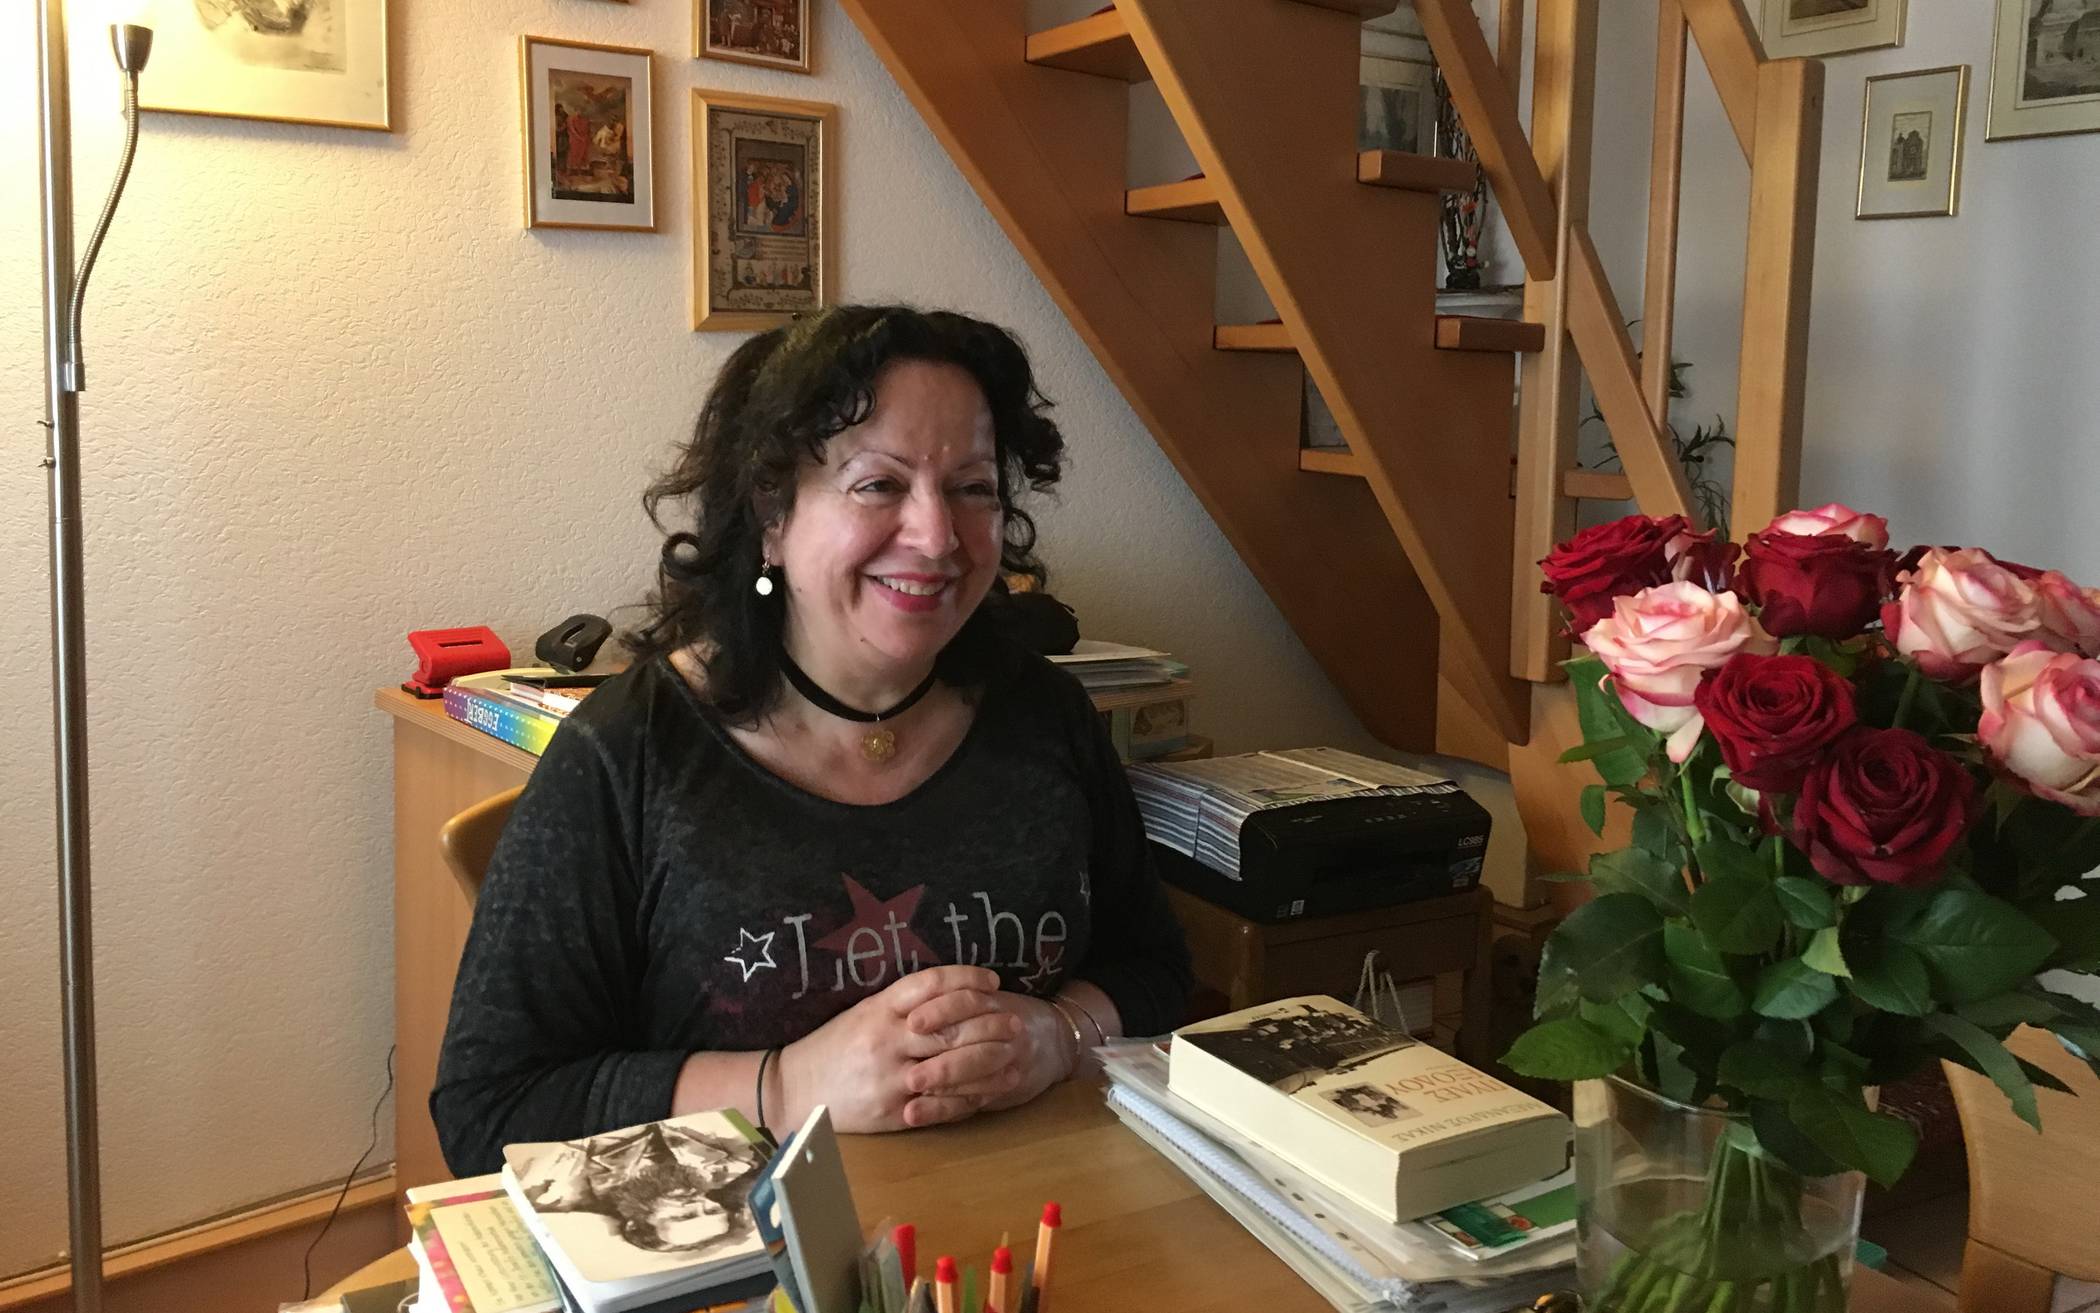  Eleni Provatou ist gebürtige Griechin. Als Lehrerin in Wuppertal hat sie viele Jahrzehnte zwischen den Kulturen vermittelt und unterrichtet. 